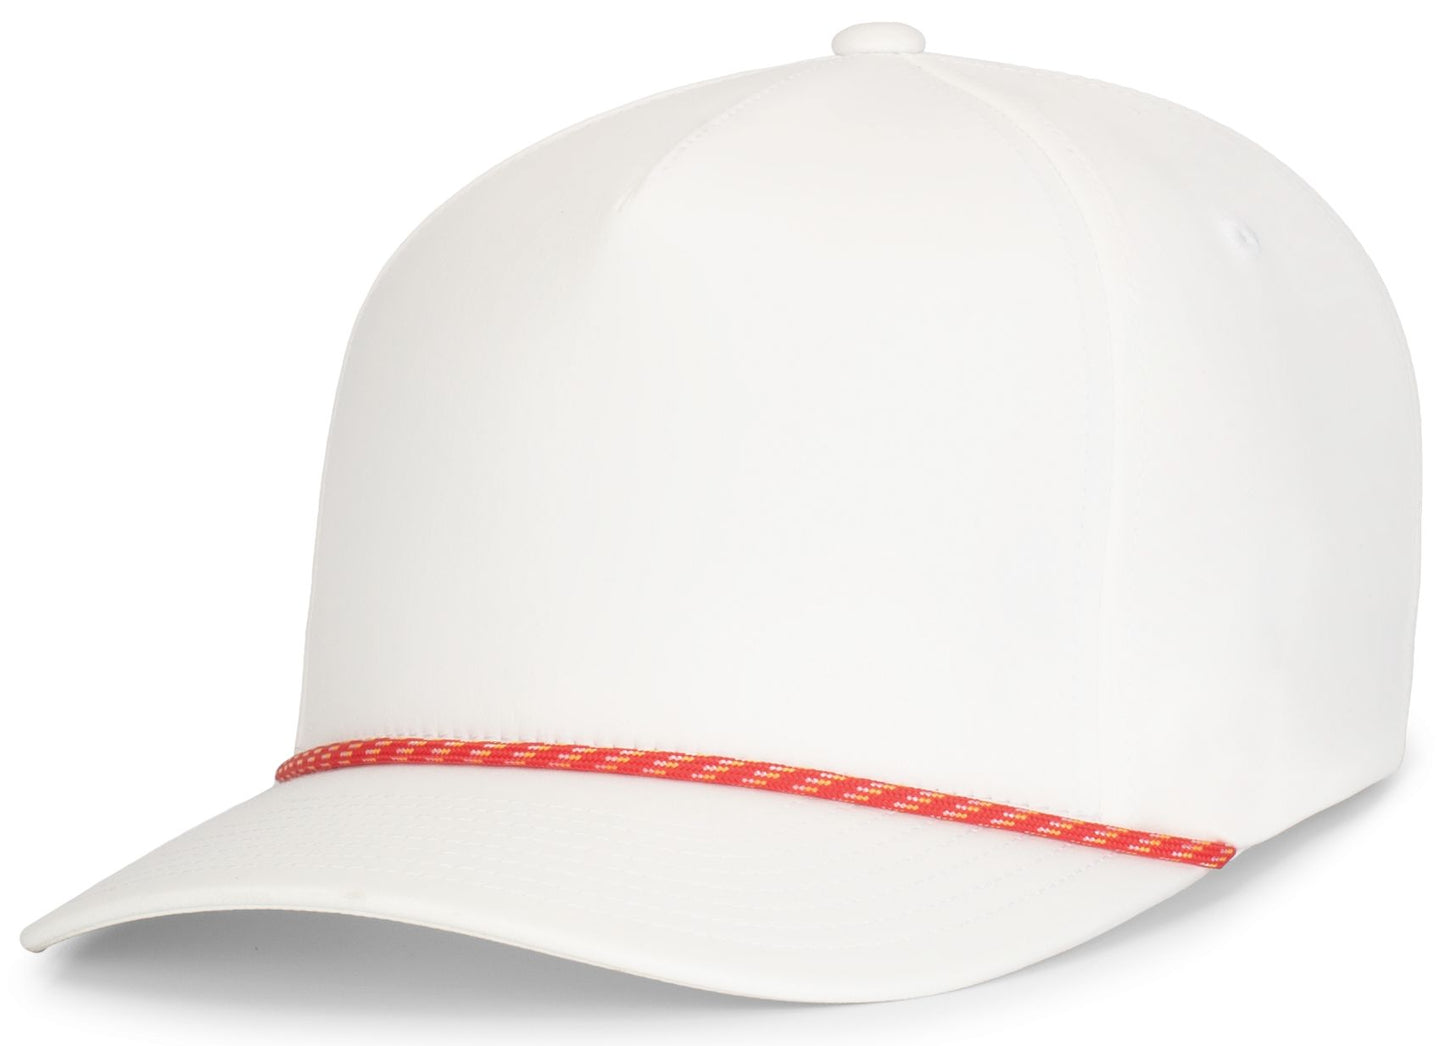 PACIFIC HEADWEAR - WEEKENDER CAP